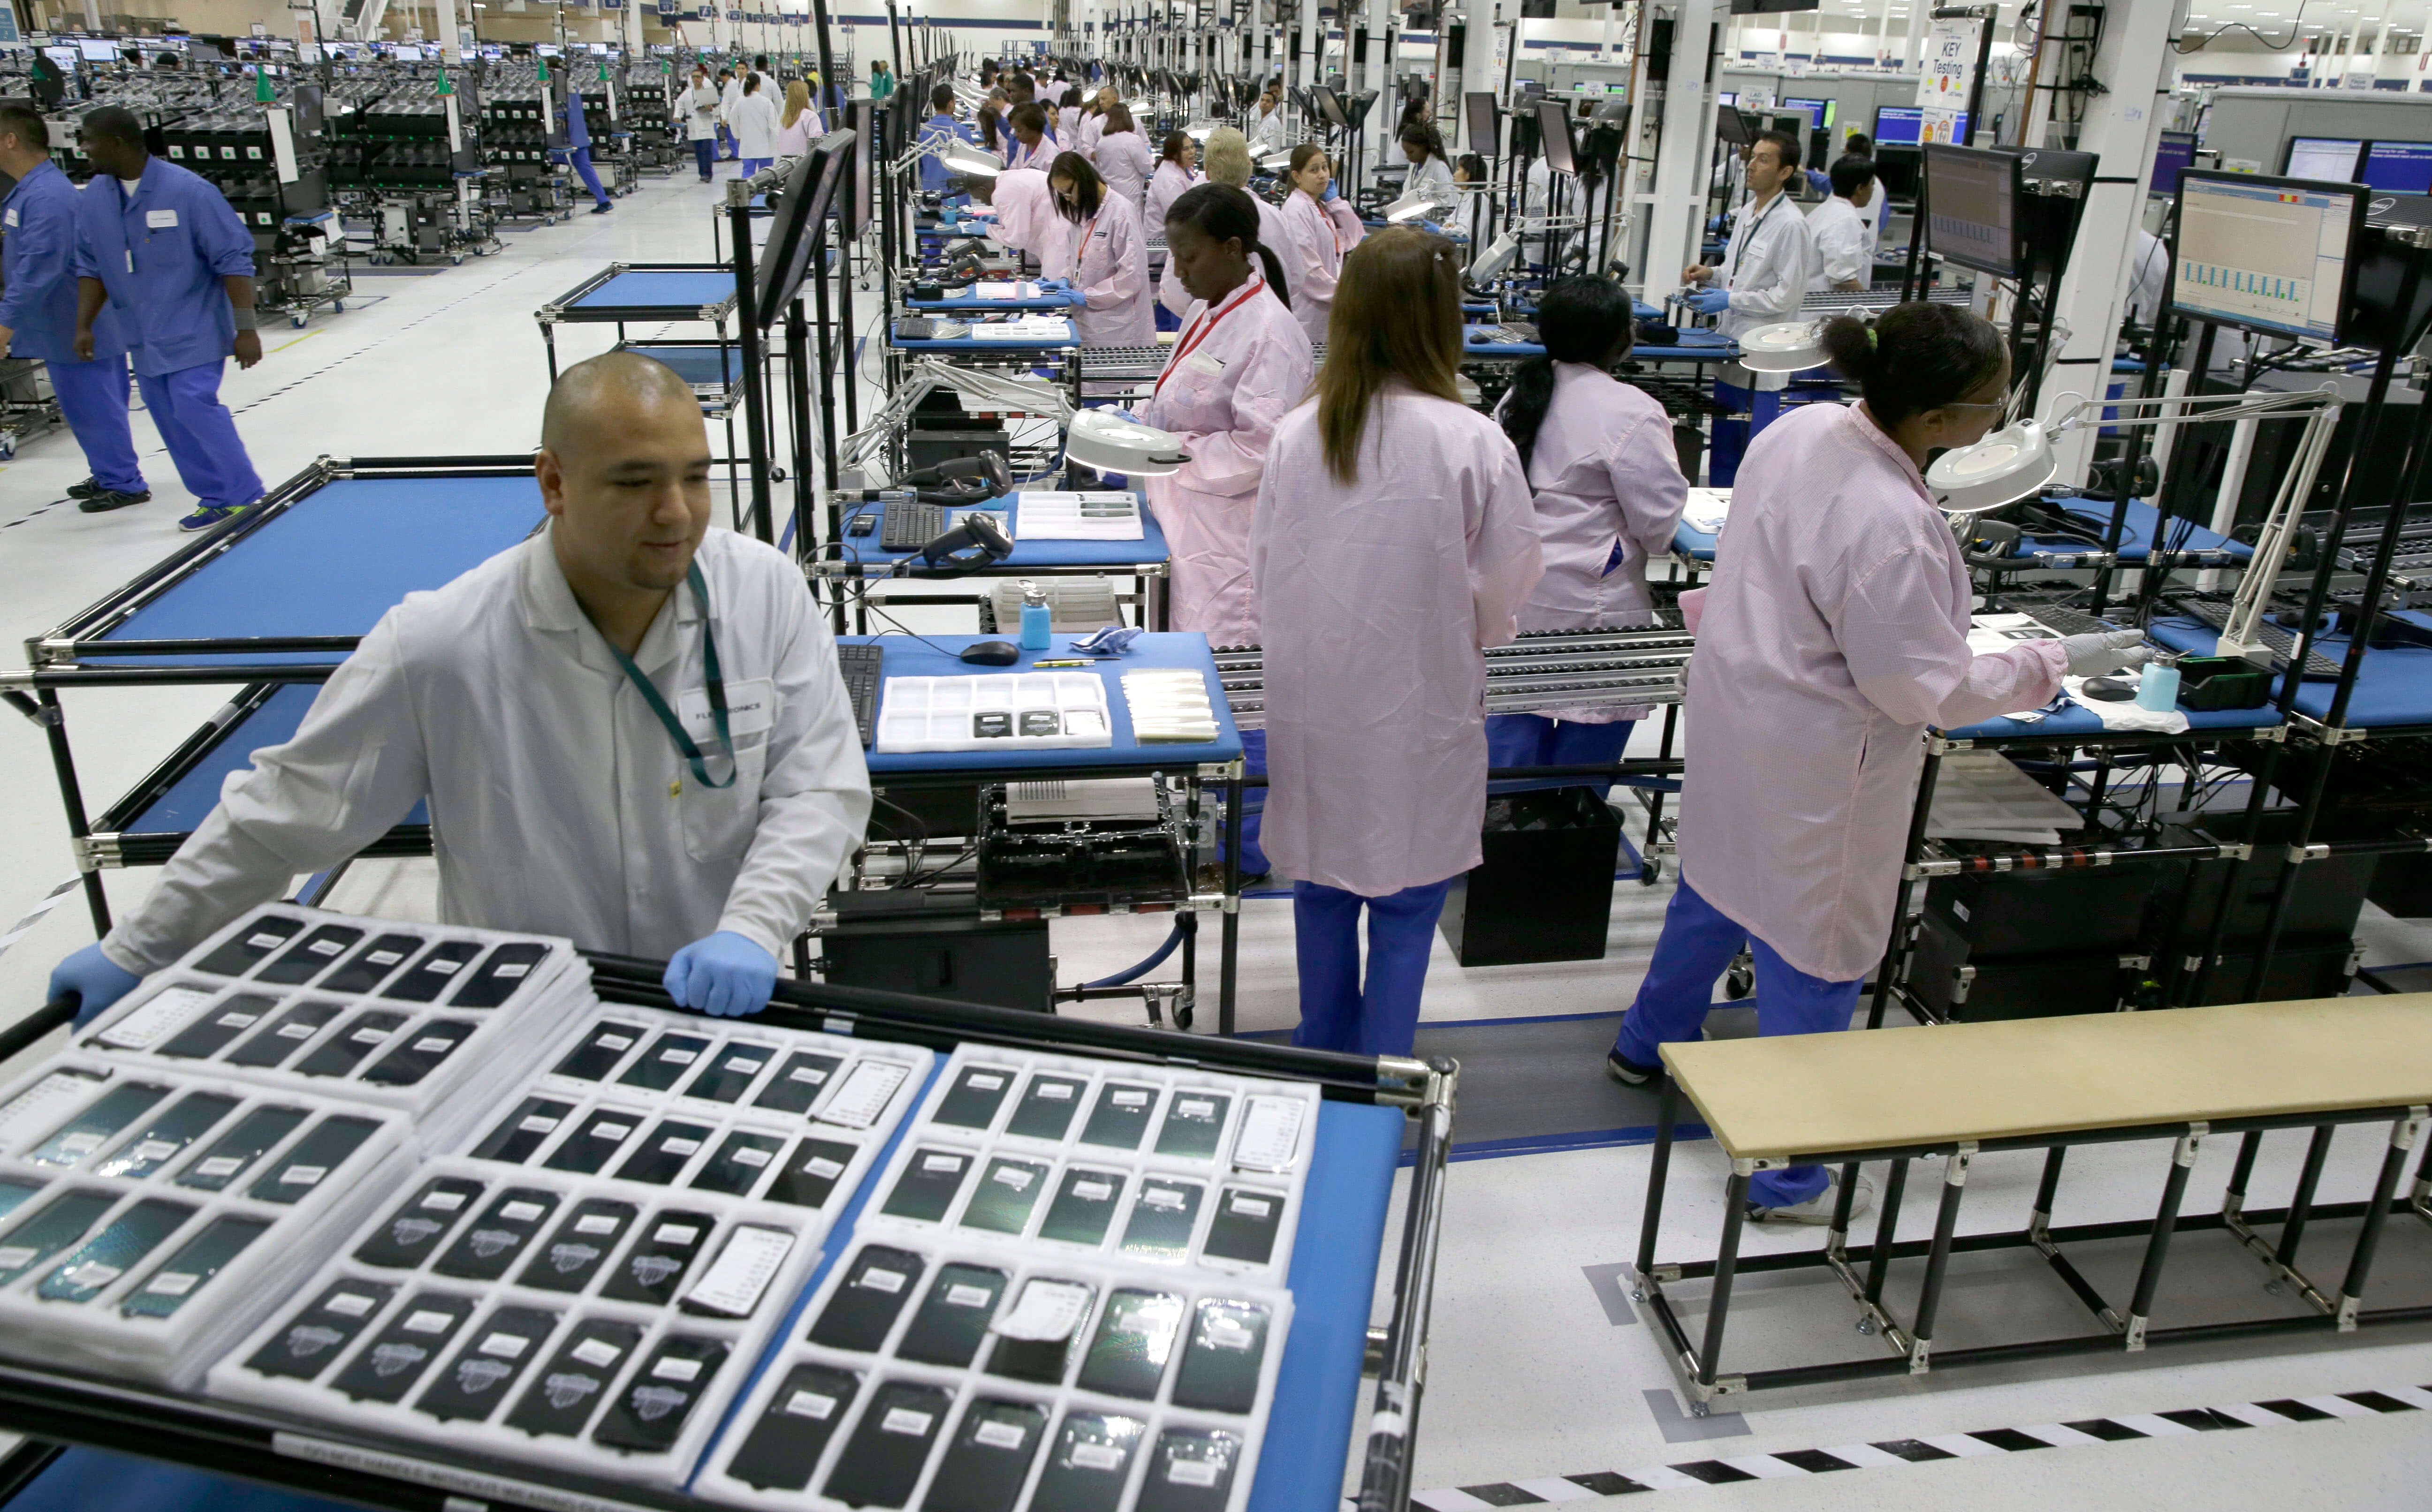 Завод Эппл. Foxconn Factory. Завод Apple в Китае. Производство смартфонов. Производители телефонов в мире